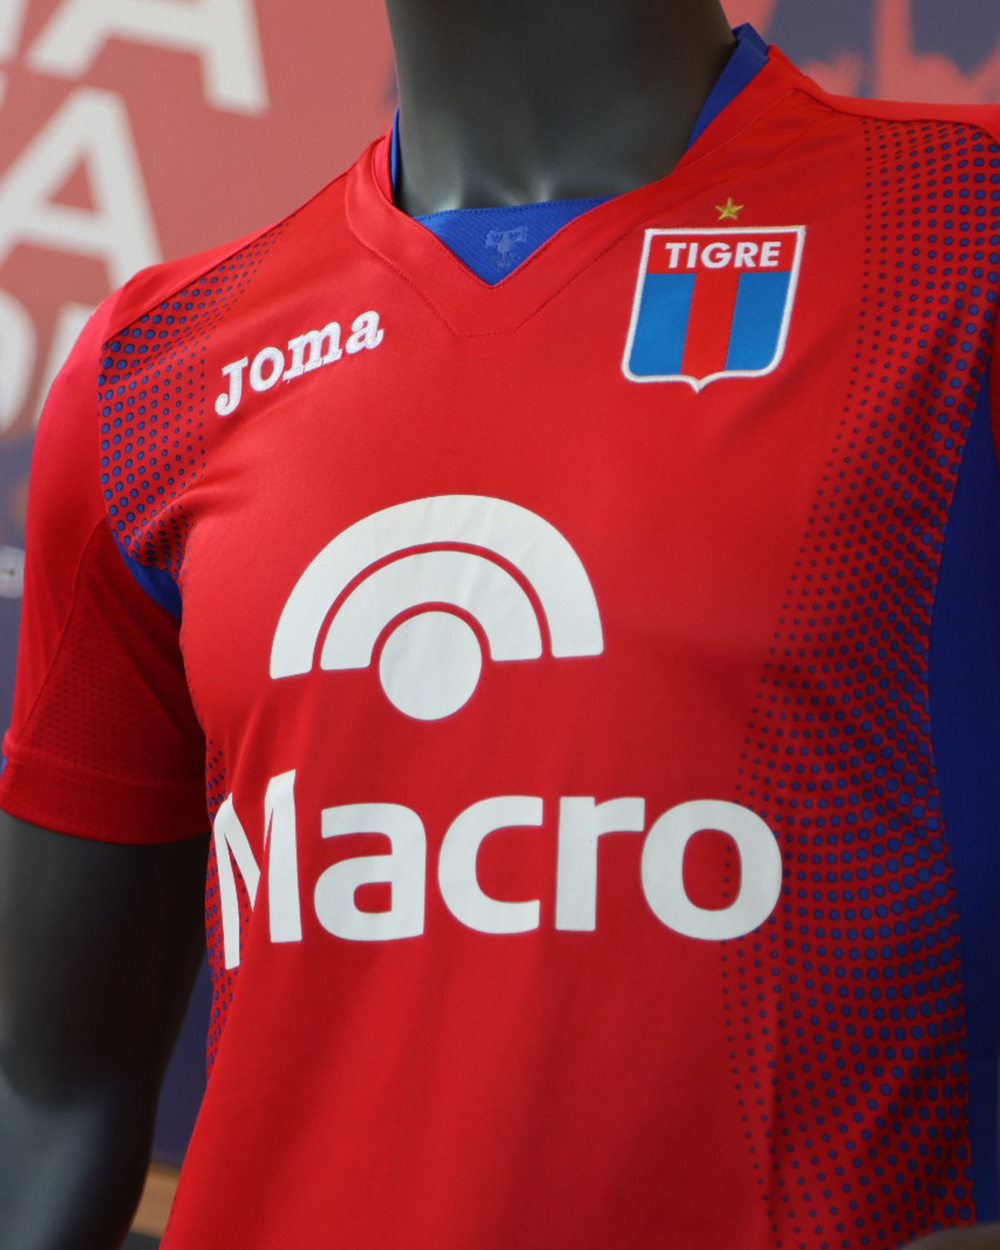 Camisetas JOMA de Tigre 2020 - Replicas camisetas de futbol